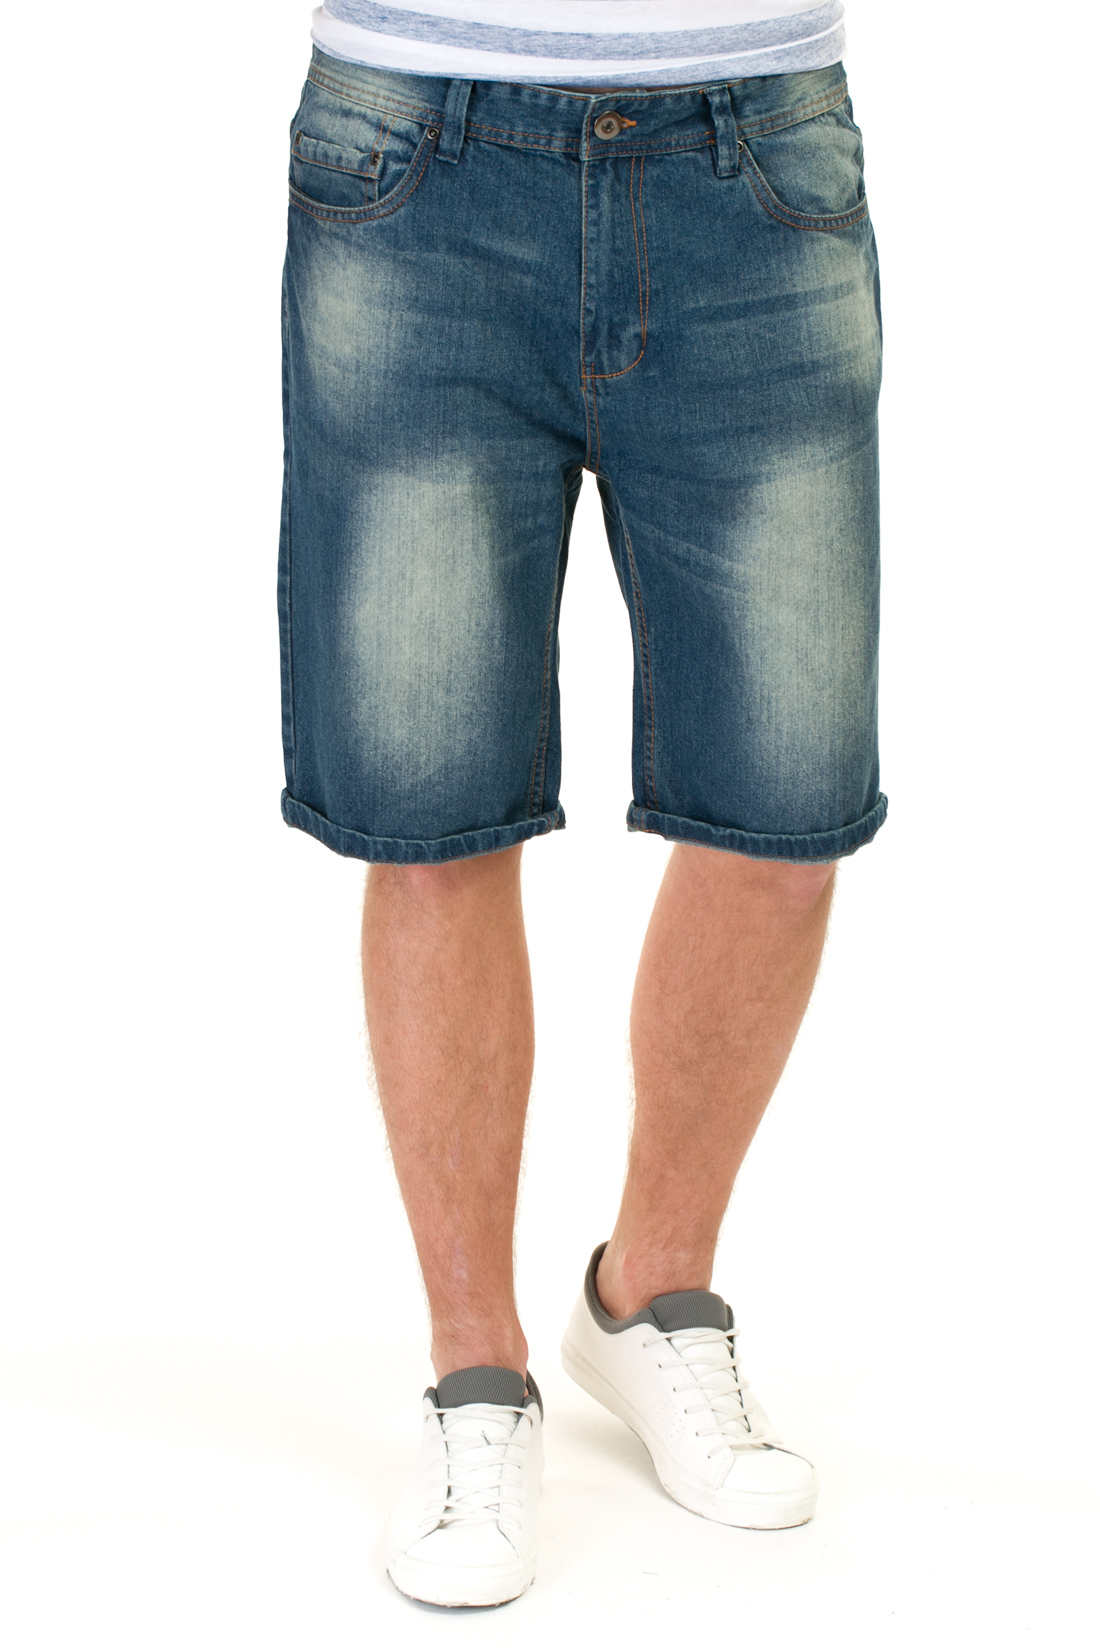 Удлинённые джинсовые шорты (арт. baon B827009), размер 38, цвет blue denim#голубой